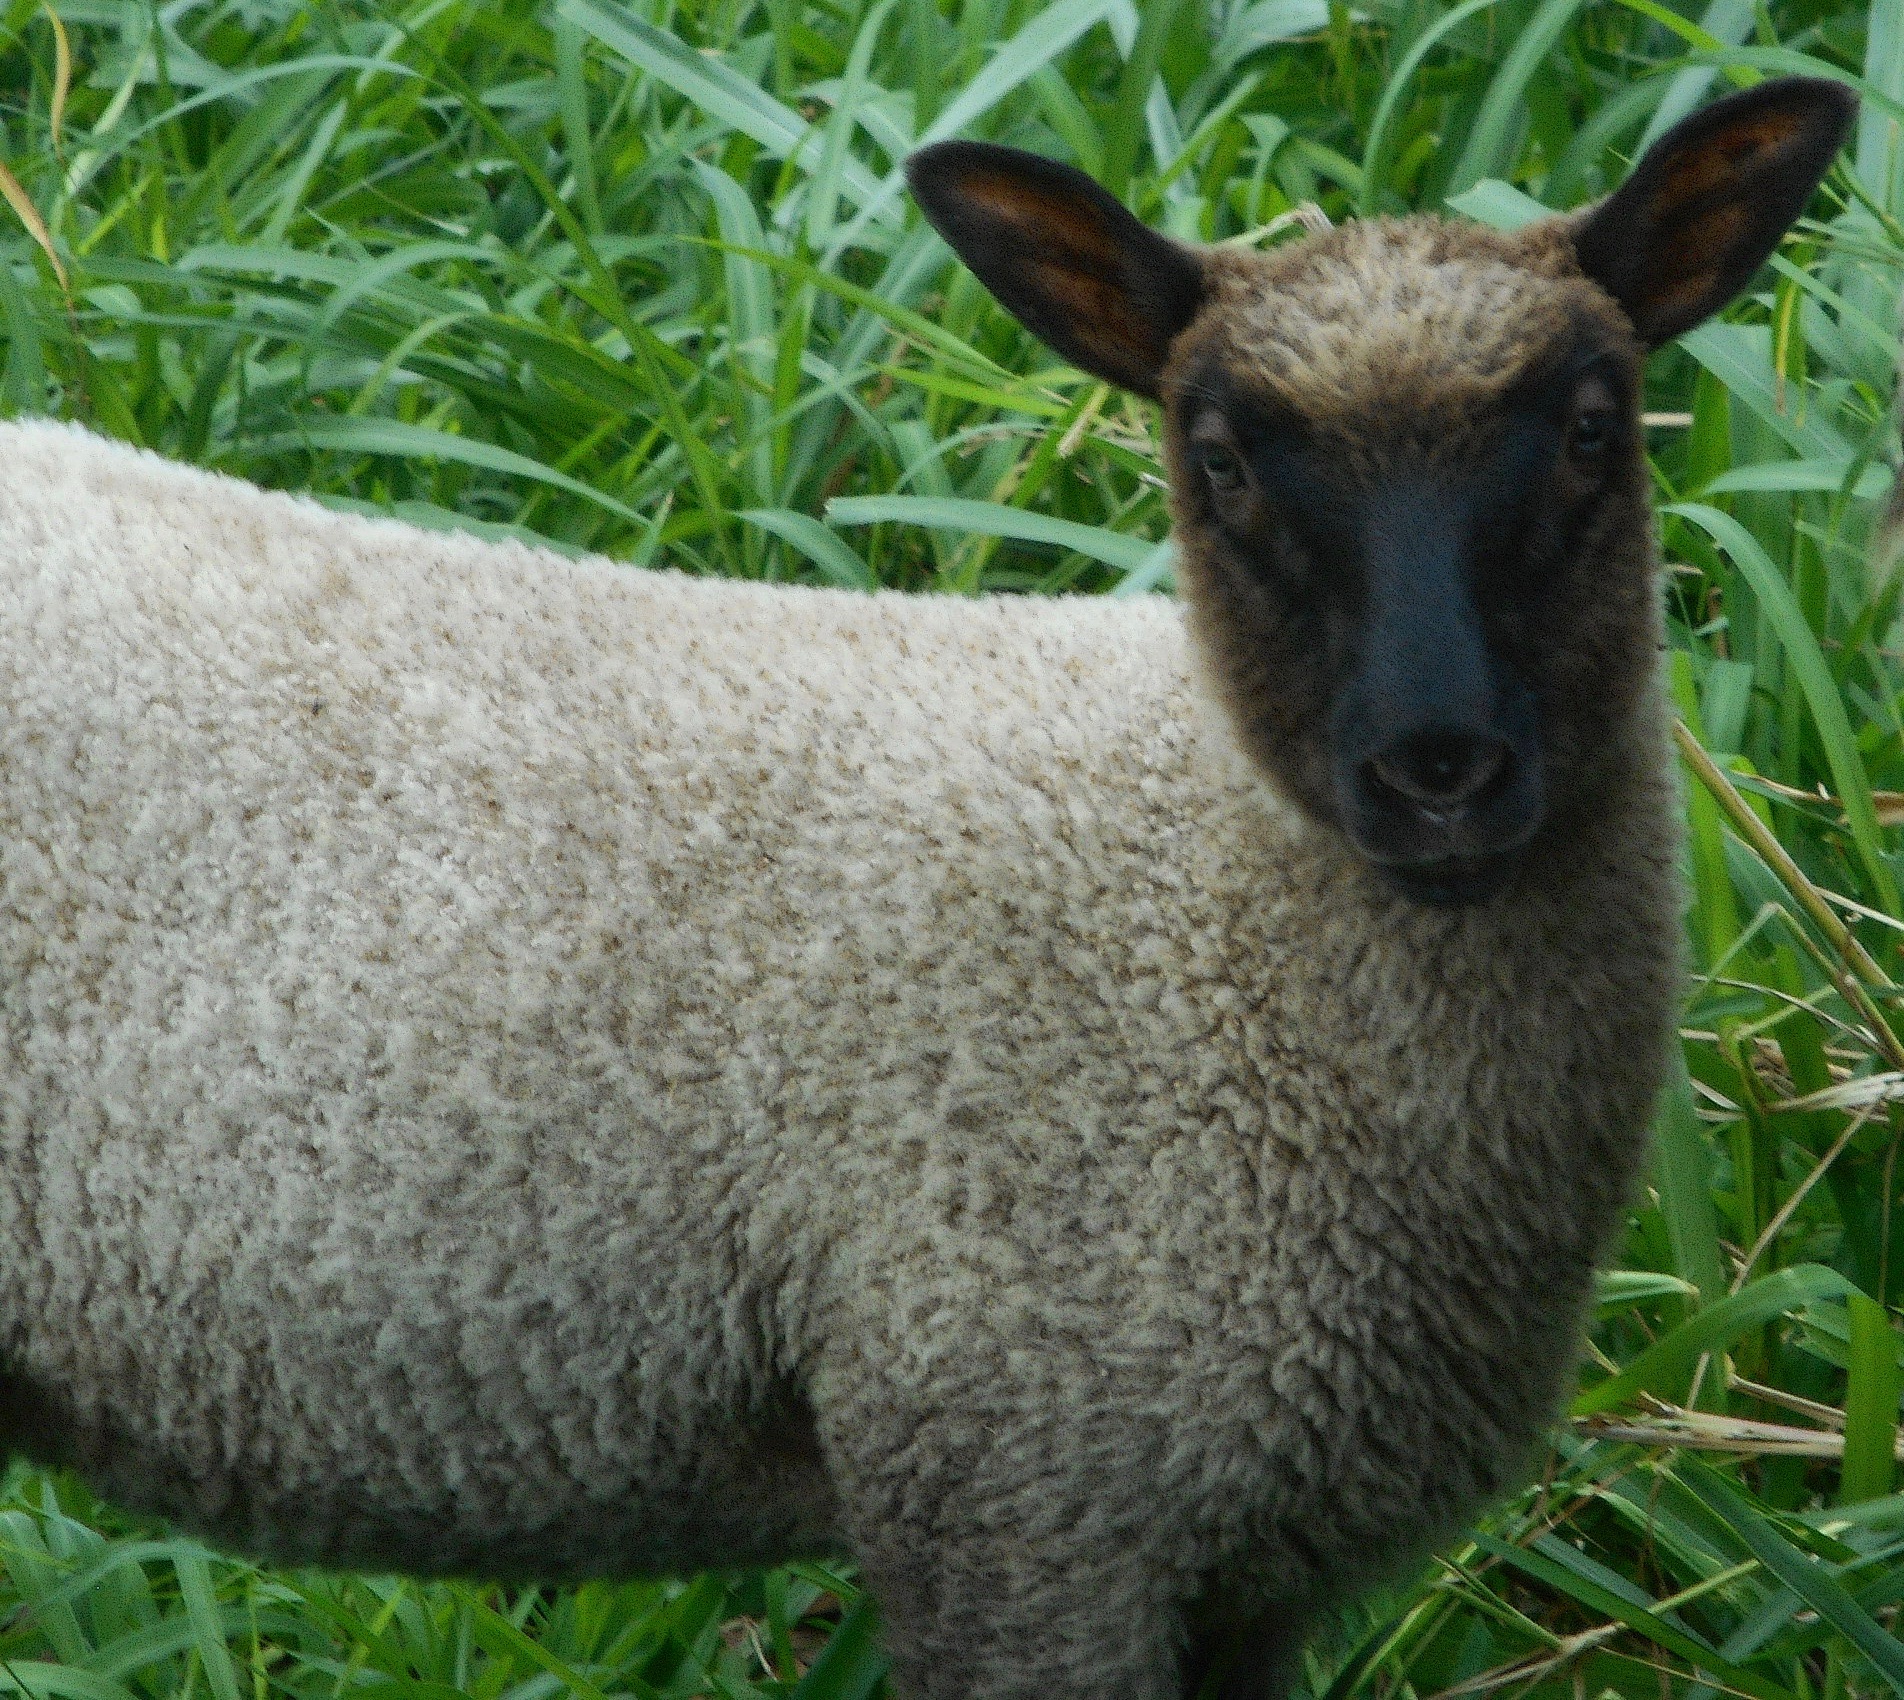 Ewe lamb